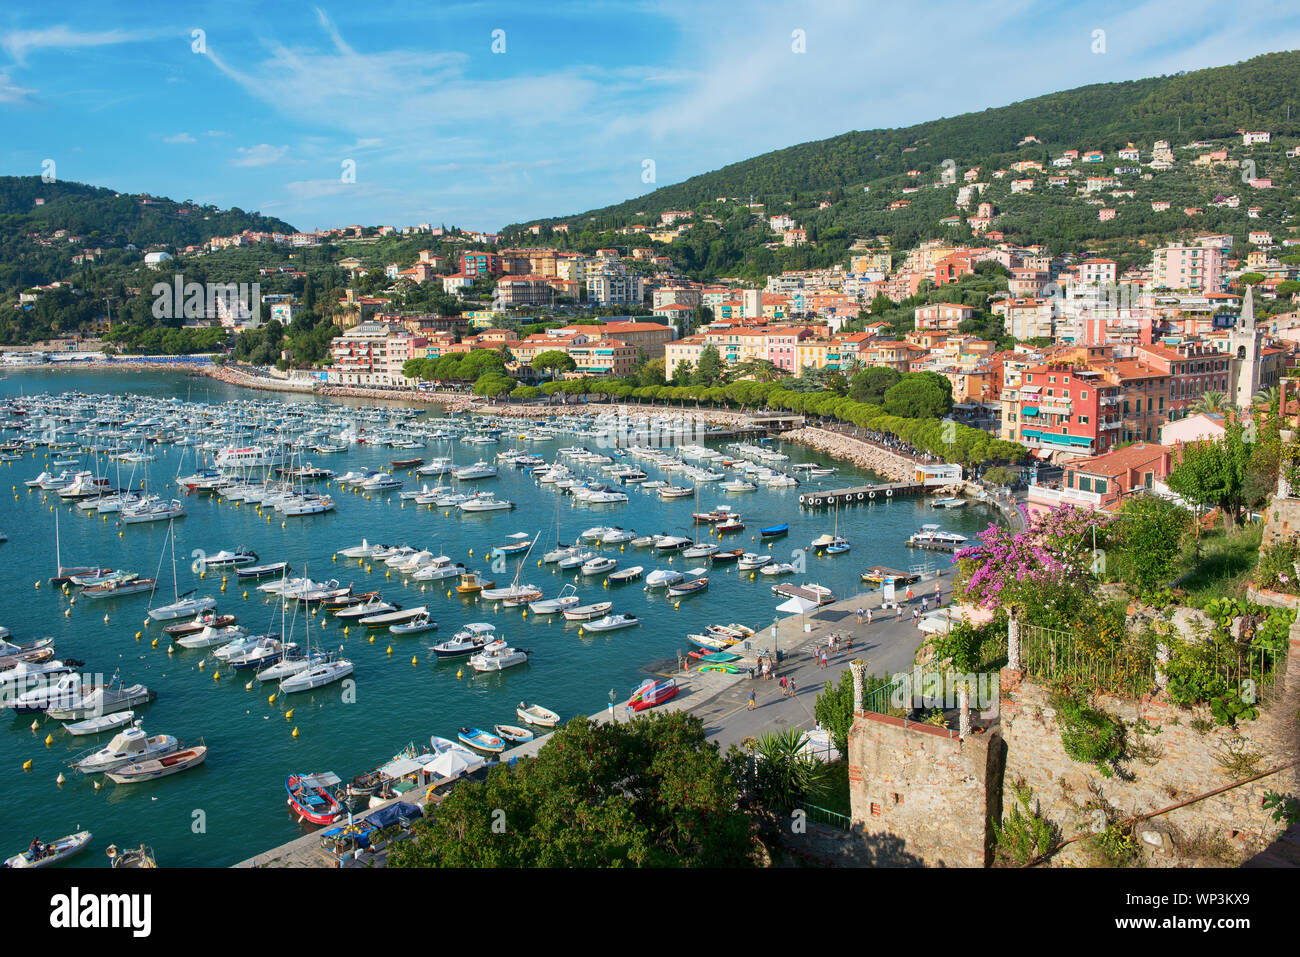 Vista in elevazione della baia e di Lerici nel Golfo di La Spezia, Italia Settentrionale dal castello che mostra le barche ormeggiate nel porto turistico e storico architec Foto Stock